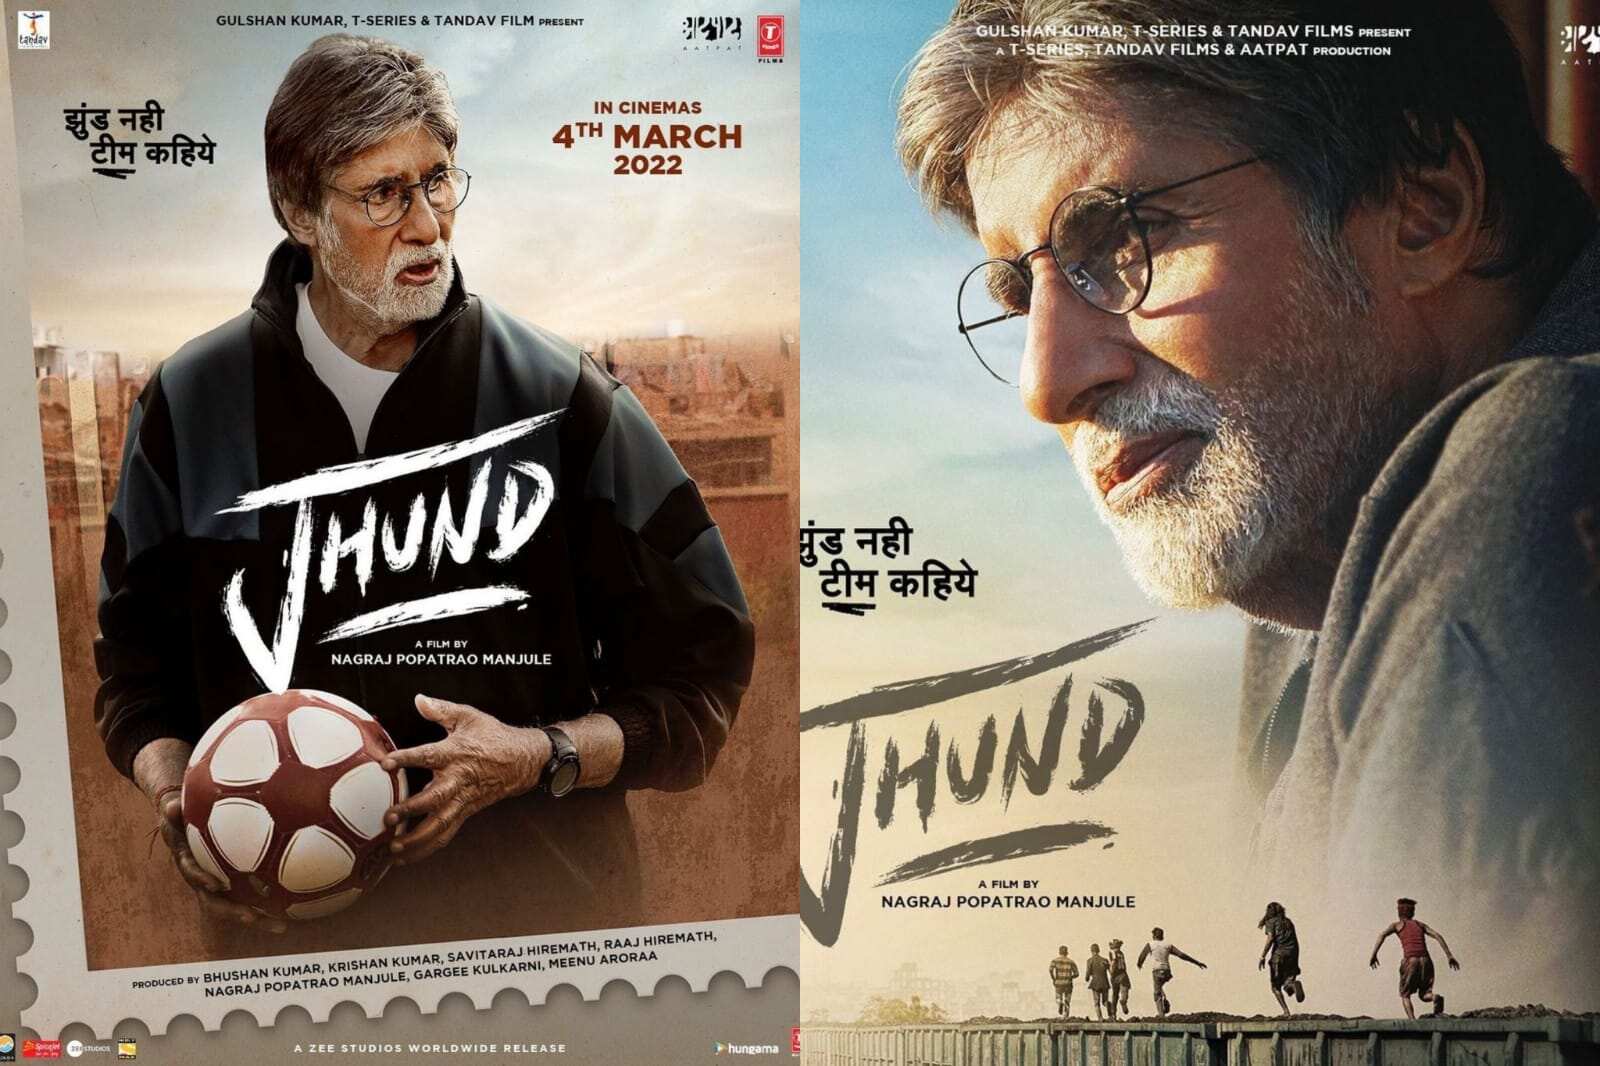 Movie review - Jhund is like 'Ek movie ke saath ek free' - Planet Bollywood